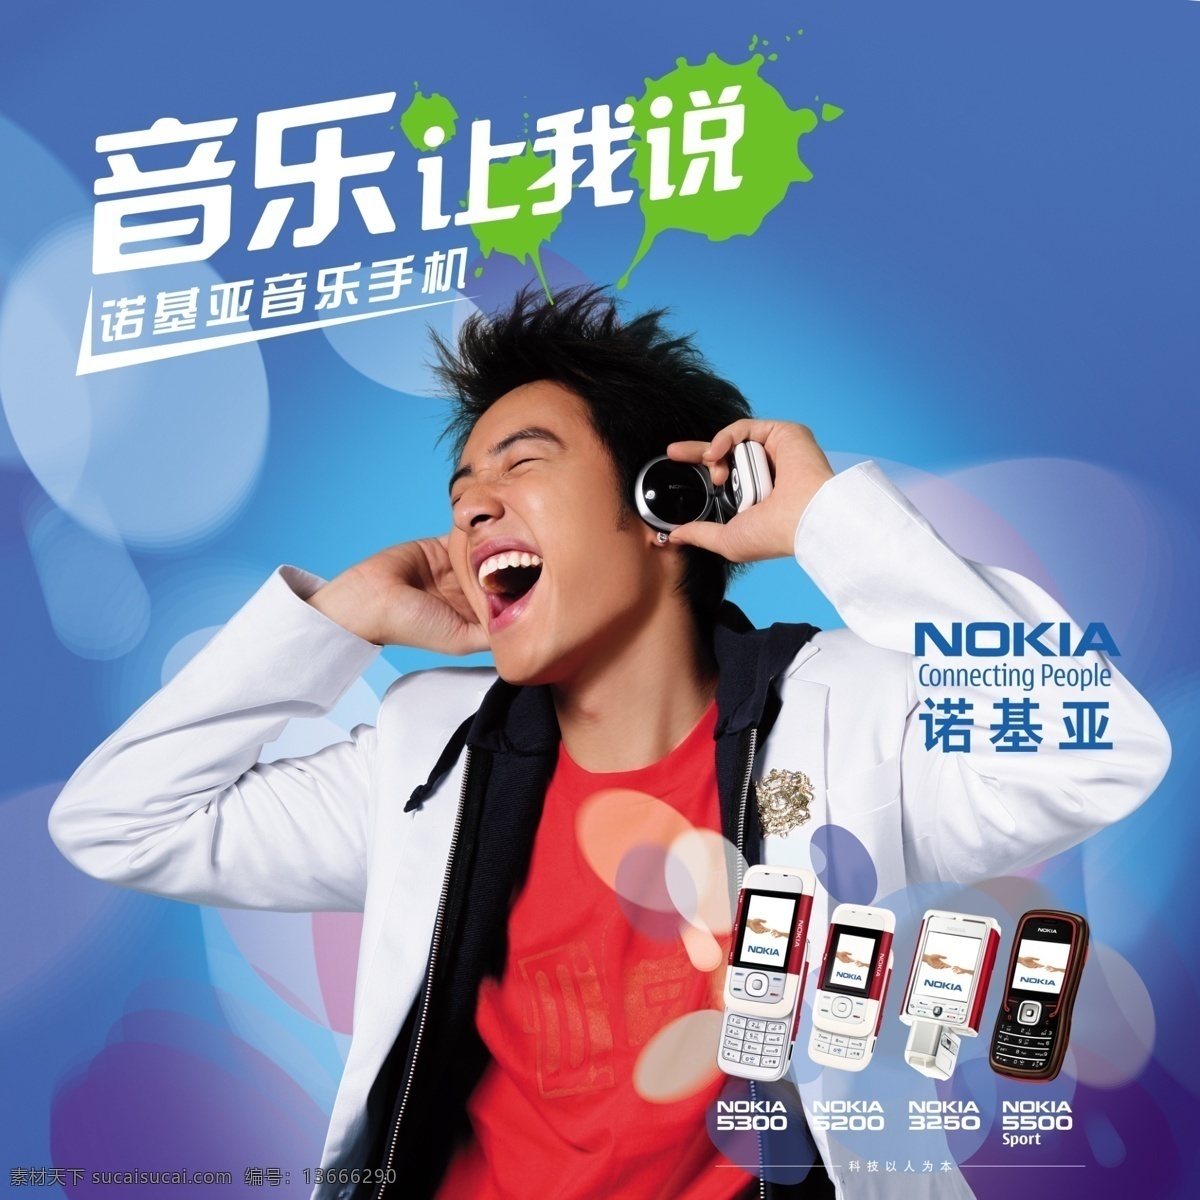 诺基亚 音乐 手机 宣传 广告 psd素材 背景效果 分层素材 广告宣传 诺基亚手机 音乐手机 无限音乐 psd源文件